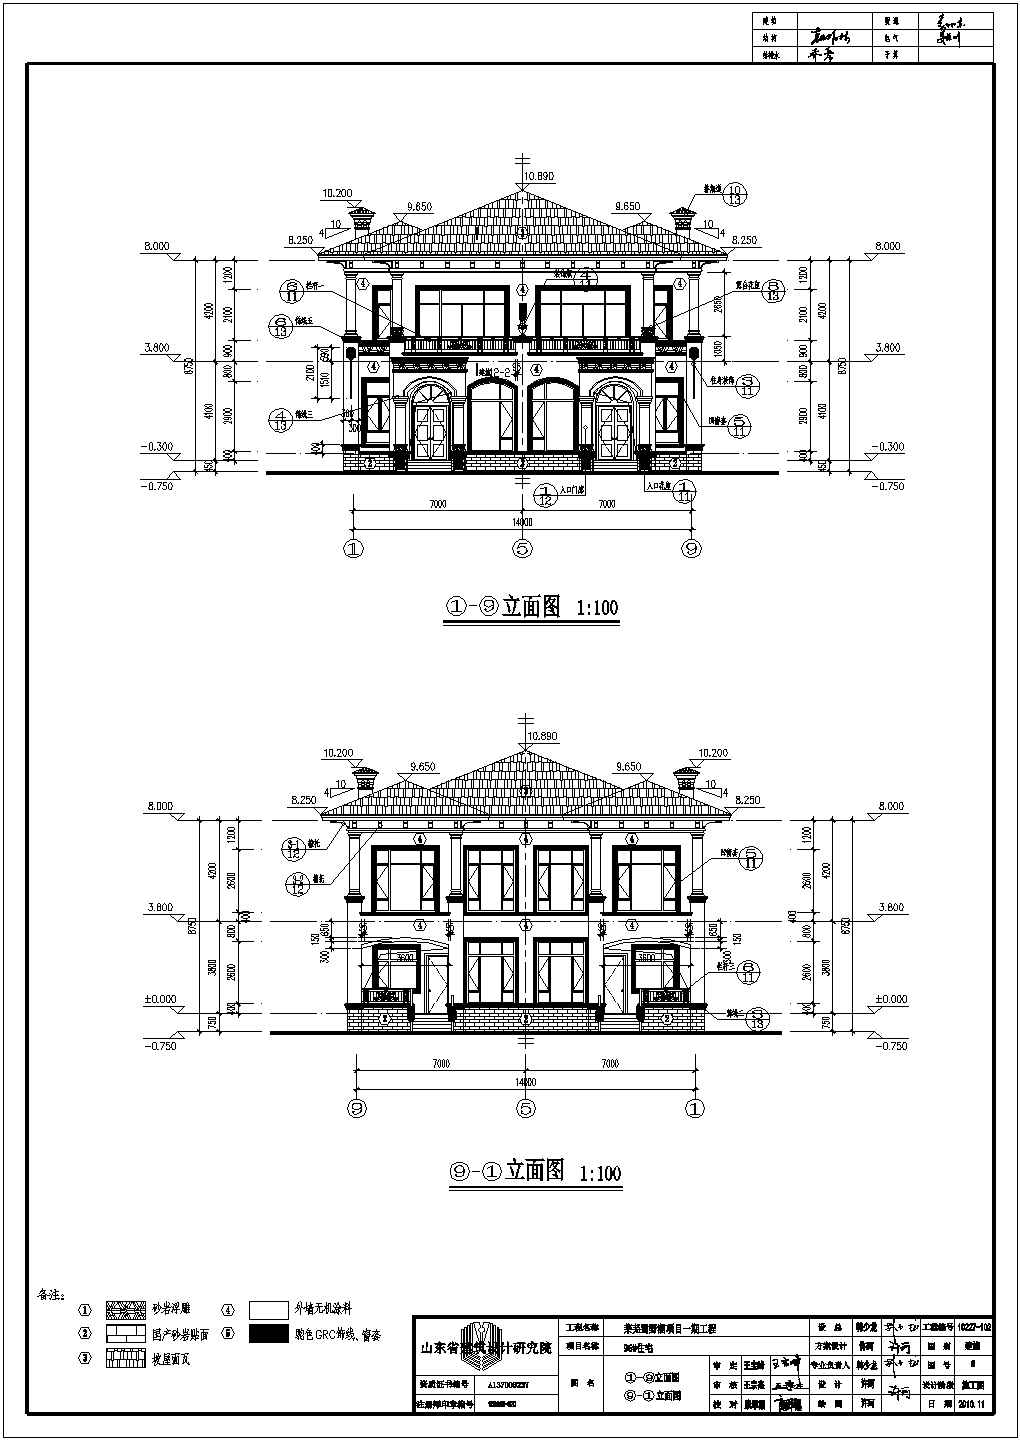 莱芜某小区2层连拼别墅建筑设计方案图纸